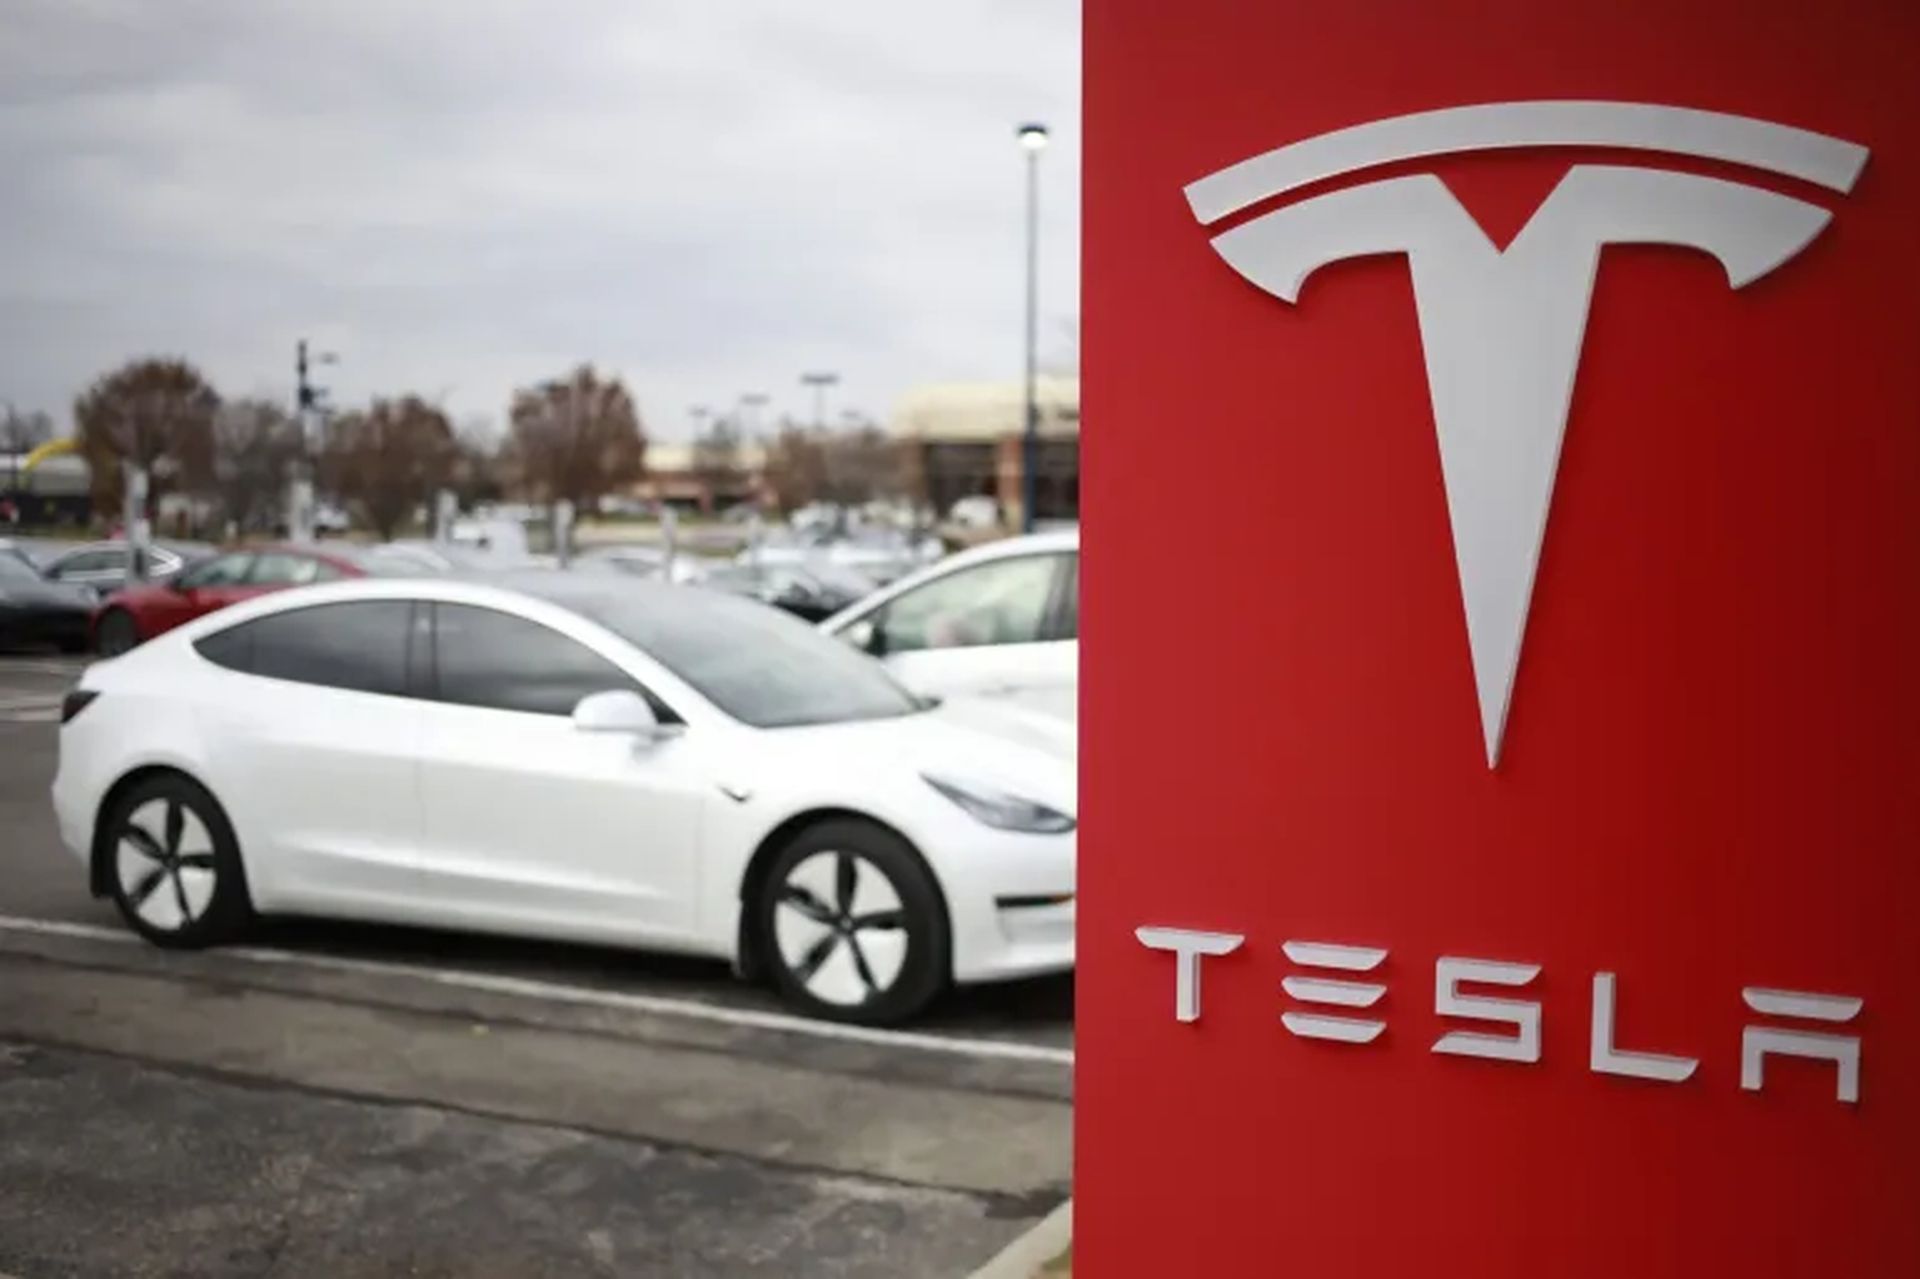 Tesla tilbagekalder køretøjer, næsten 1,1 millioner køretøjer berørt i USA, og det er fordi vinduerne kan lukke for hurtigt og klemme folks...